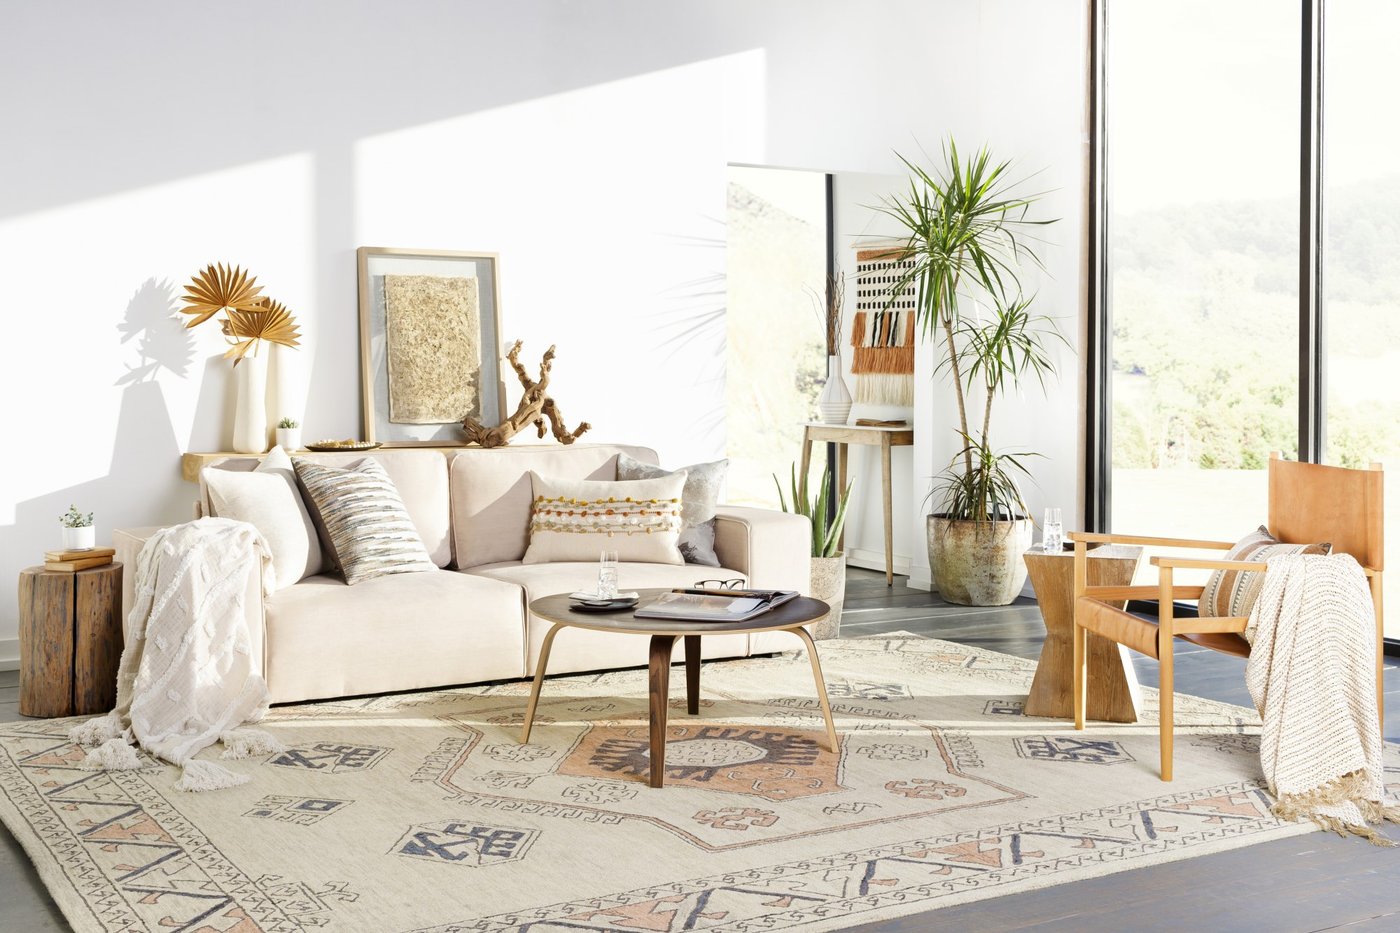 Adobe Boho Living Room Decor Ideas